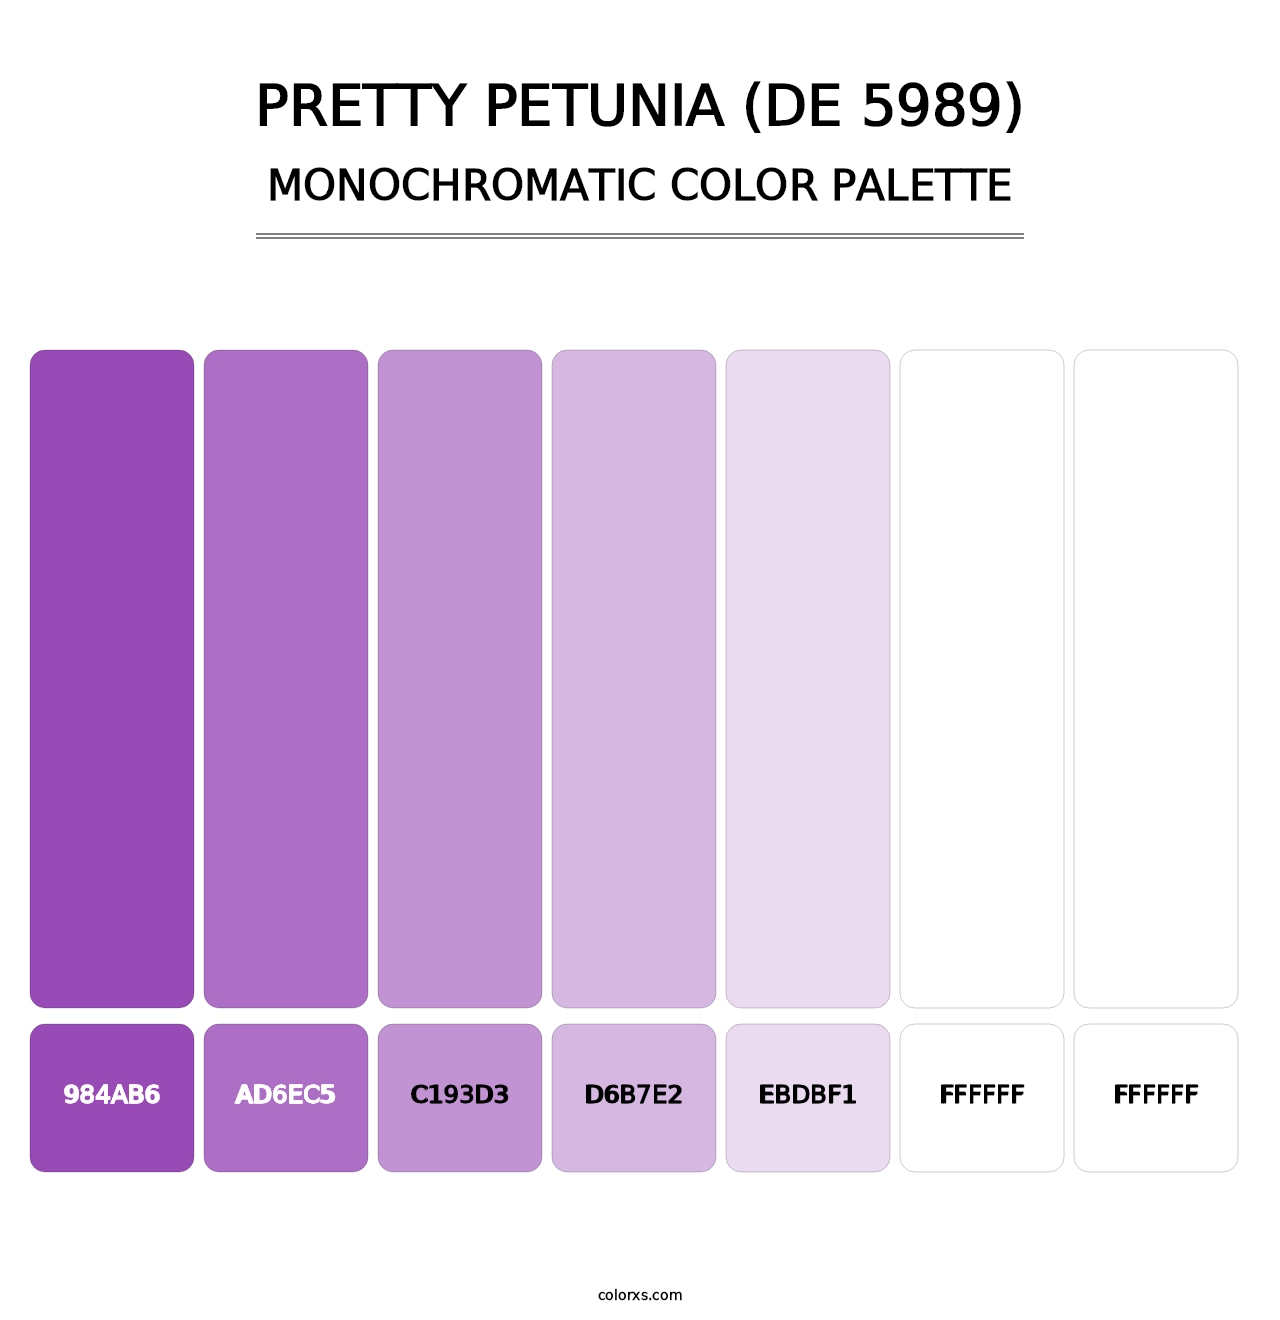 Pretty Petunia (DE 5989) - Monochromatic Color Palette